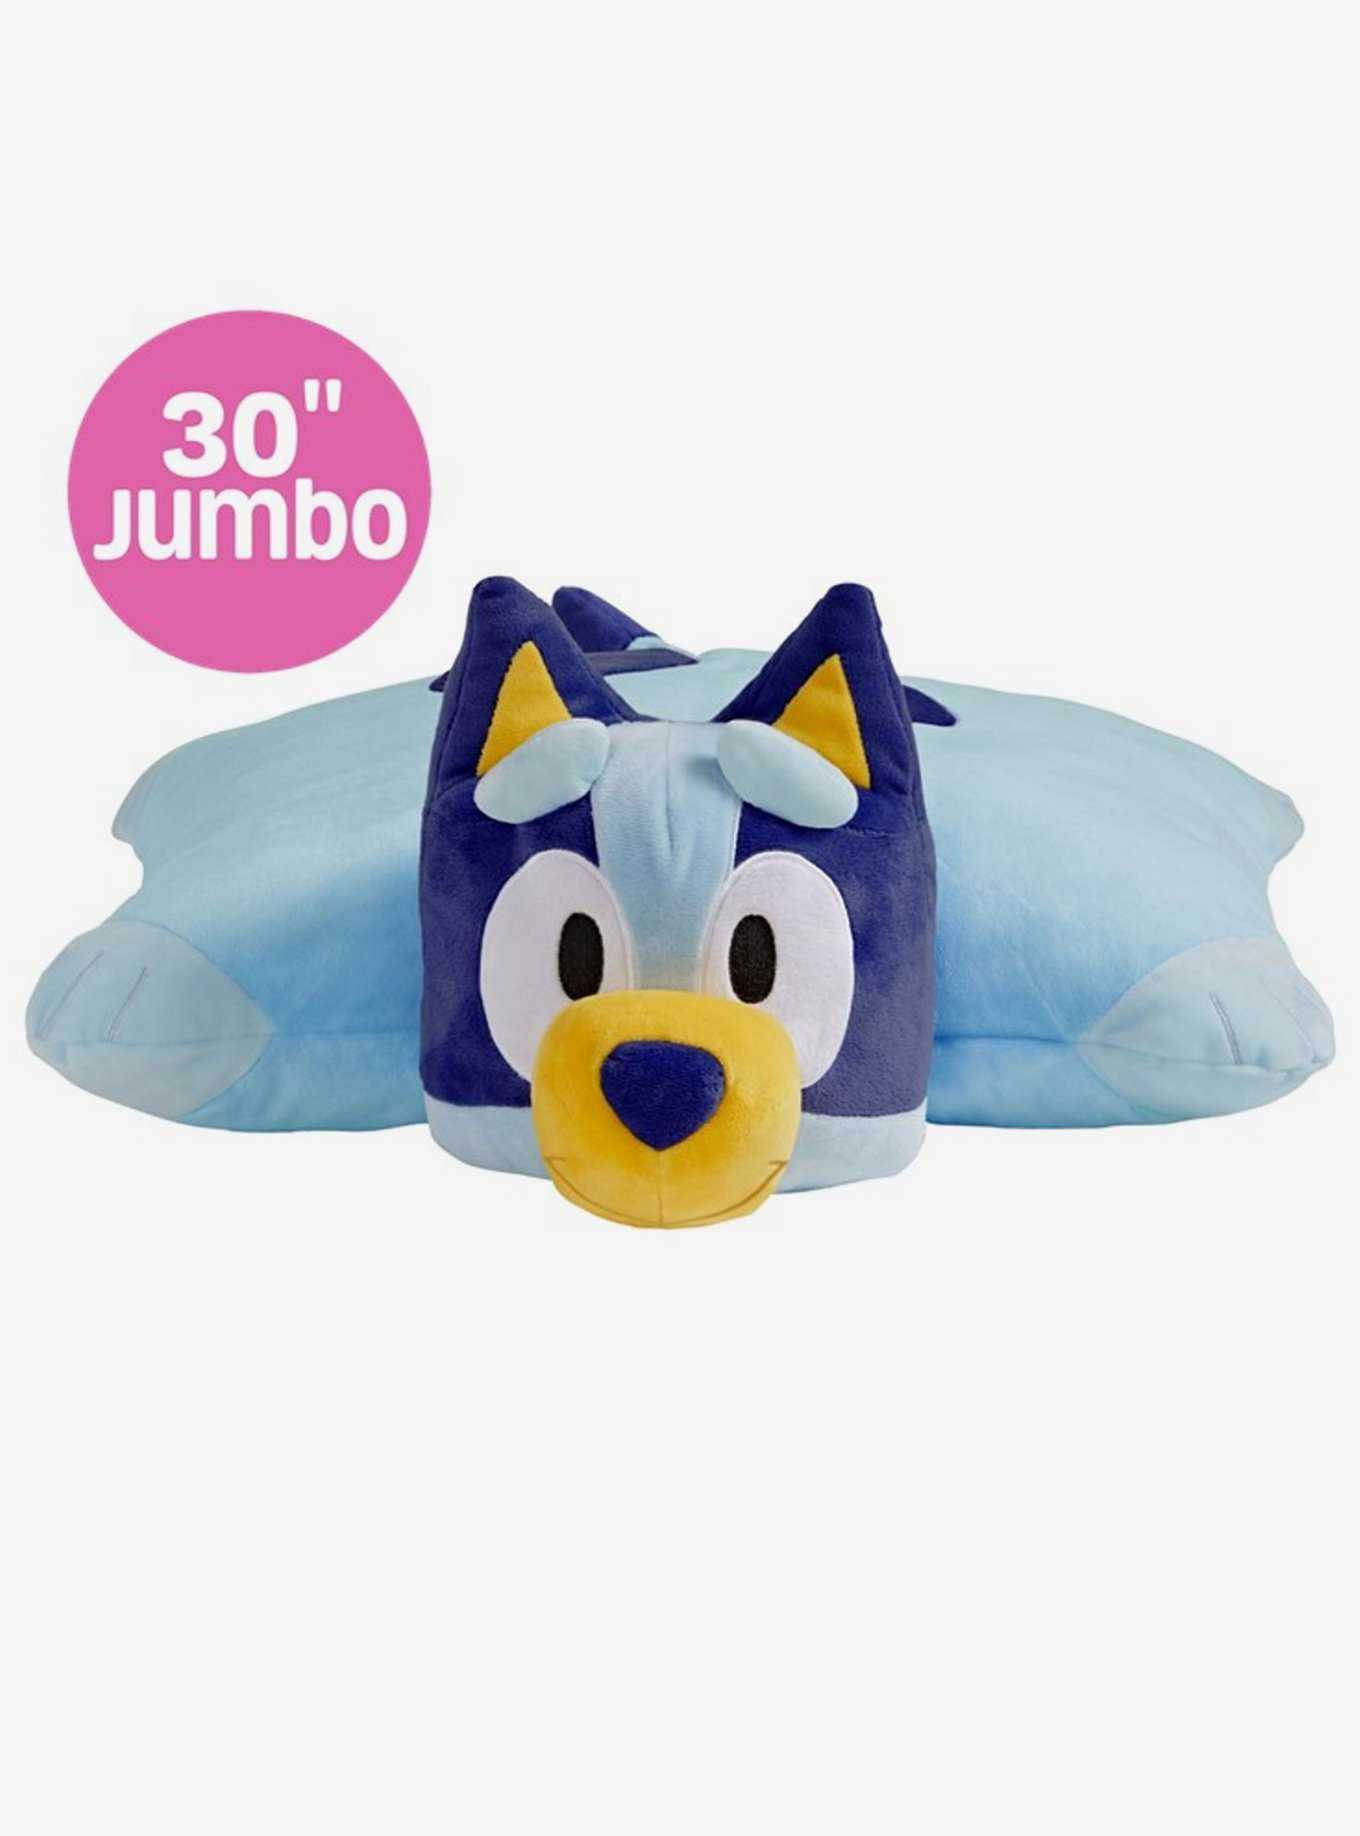 Bluey Jumbo Pillow Pet, , hi-res